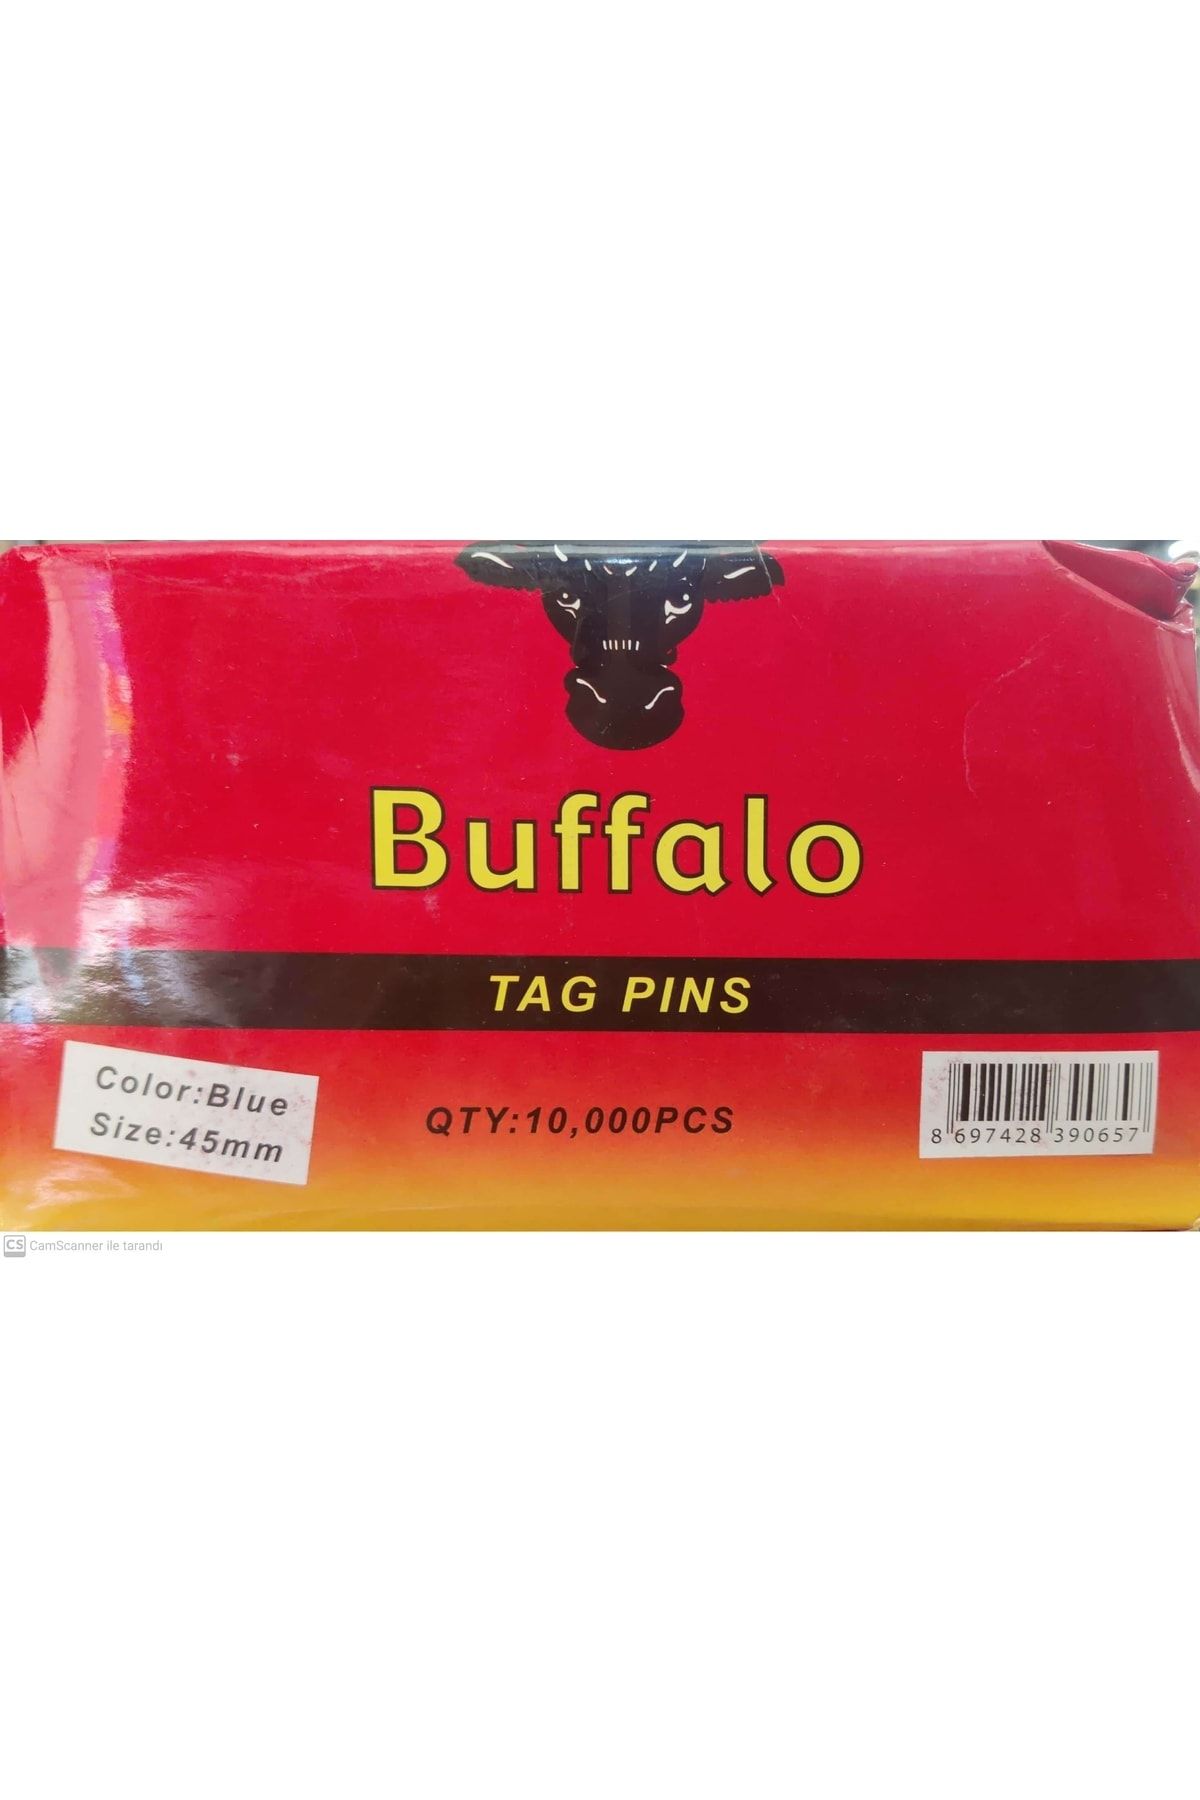 Buffalo Kılçık Etiketleme Makinesi Için 10.000 Adet 45mm Karışık Renk